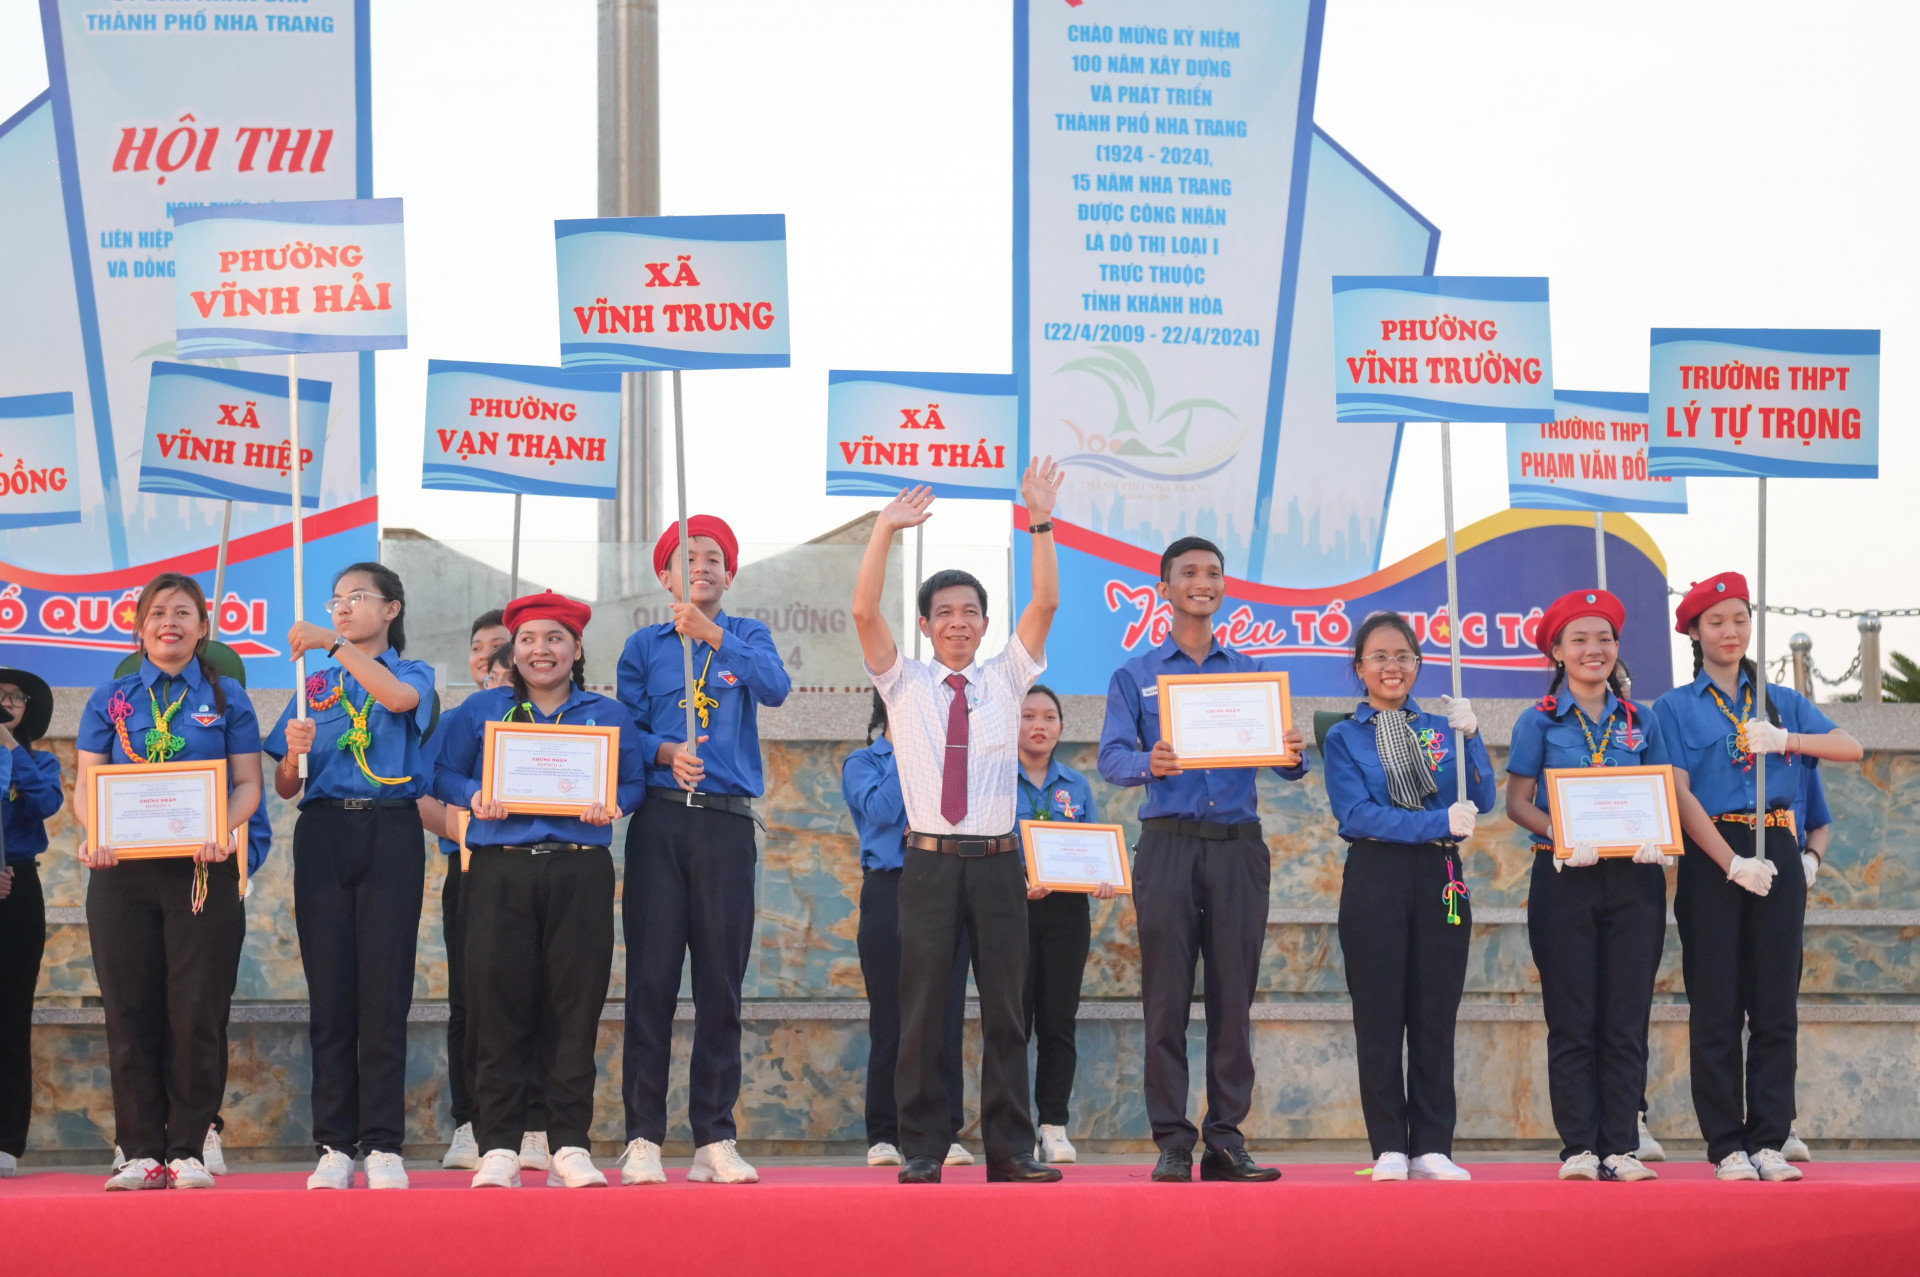 Ban tổ chức trao giải nhất hội thi cho các đội diễu hành phường Vĩnh Hải, xã Vĩnh Trung, phường Vĩnh Trường và Trường THPT Lý Tự Trọng.